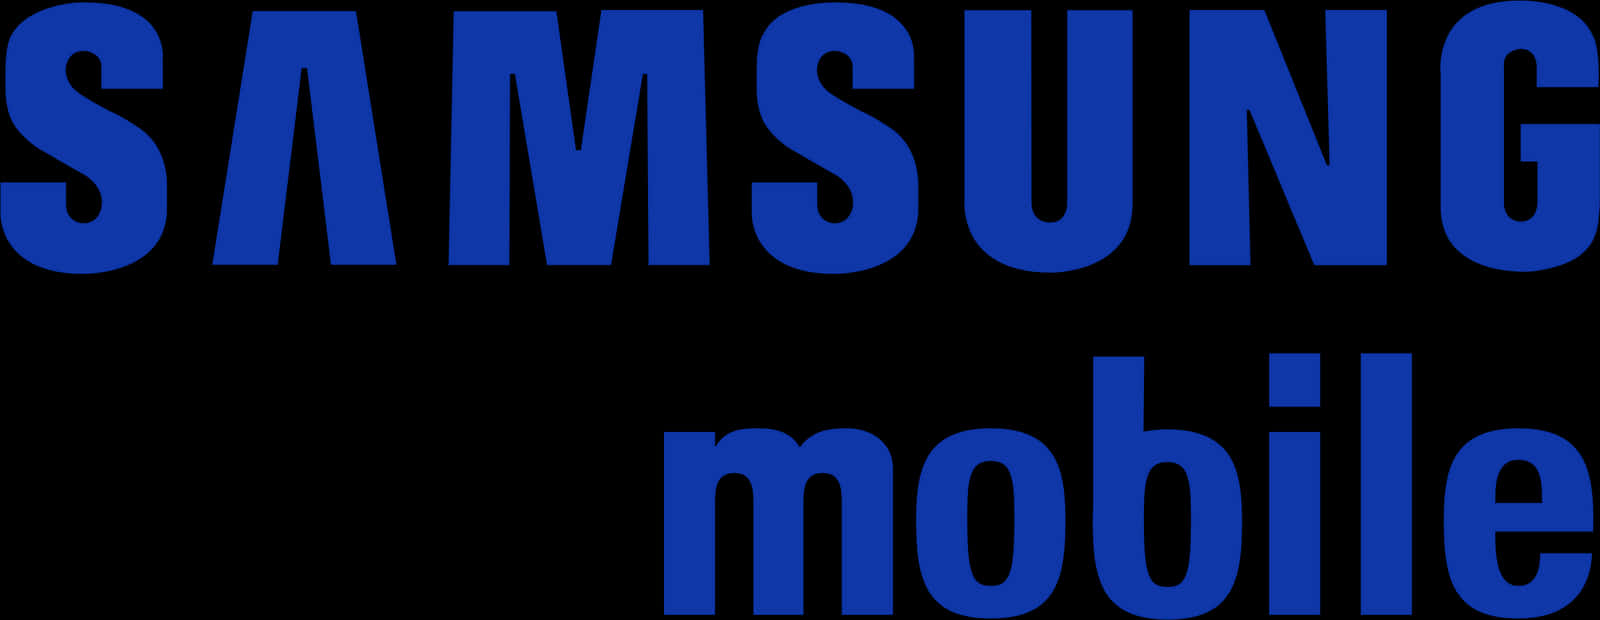 Samsung Mobile Logo Blue Background PNG image